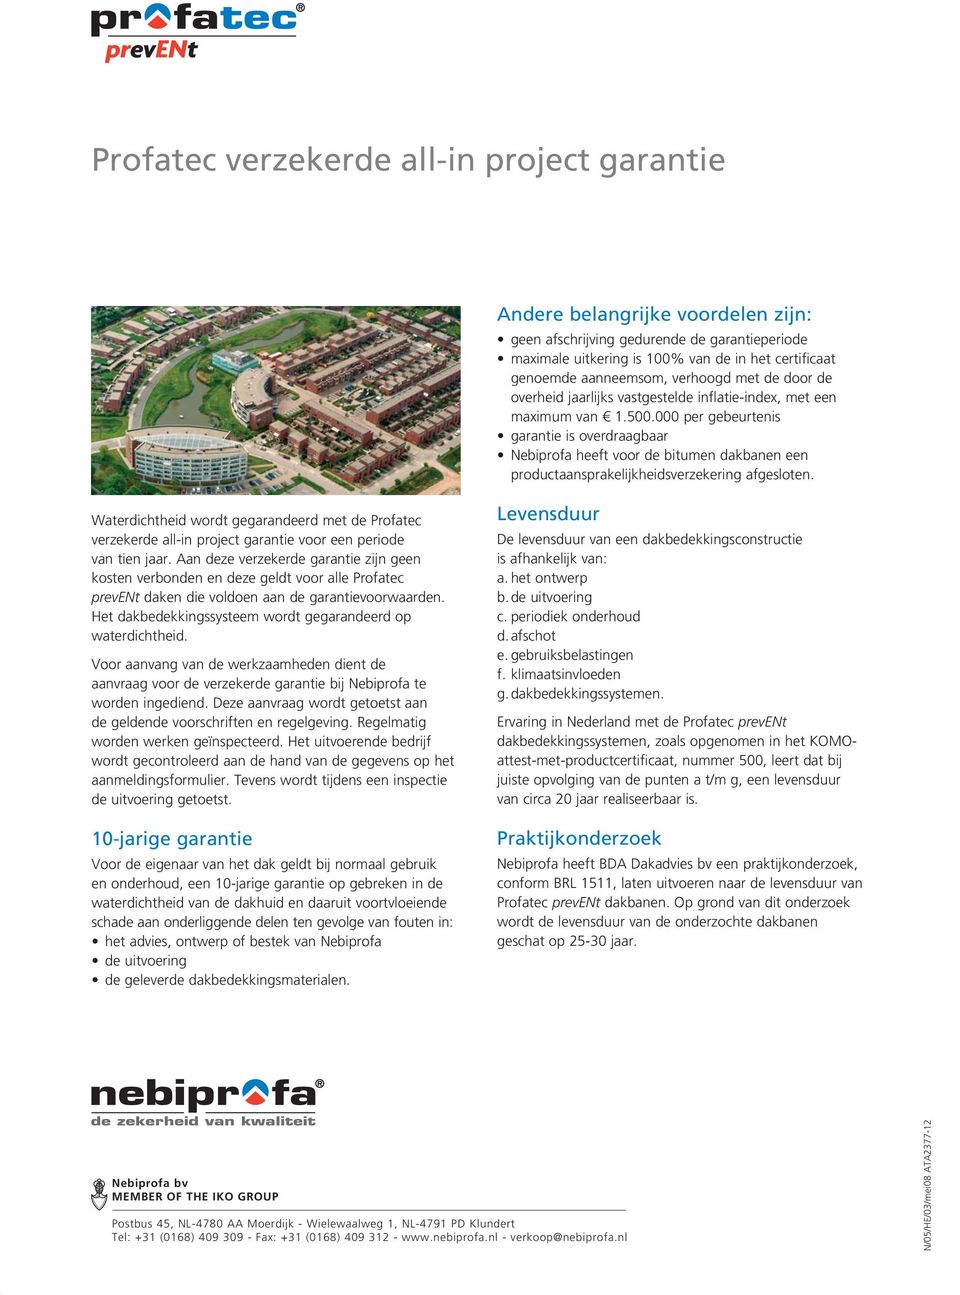 000 per gebeurtenis garantie is overdraagbaar Nebiprofa heeft voor de bitumen dakbanen een productaansprakelijkheidsverzekering afgesloten.